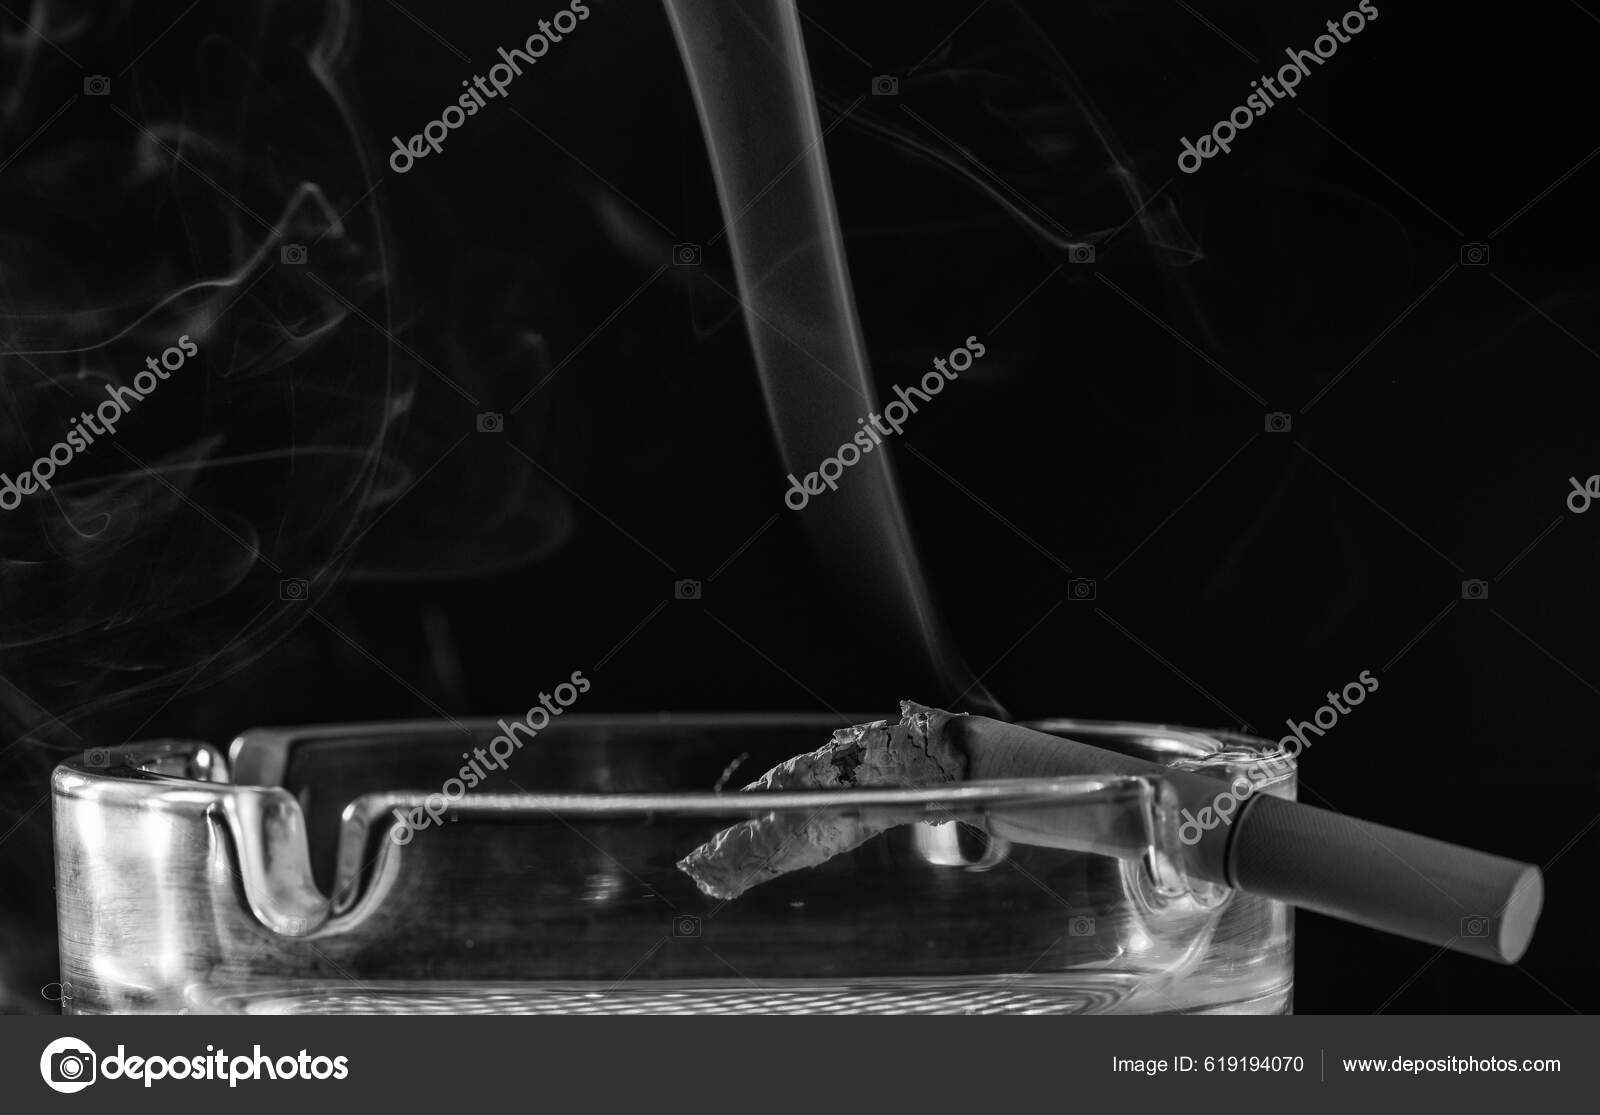 Roter Rauch Steigt Aus Brennender Zigarette Glas Aschenbecher Auf  Zigarettenstummel - Stockfotografie: lizenzfreie Fotos © stetsik 619194070